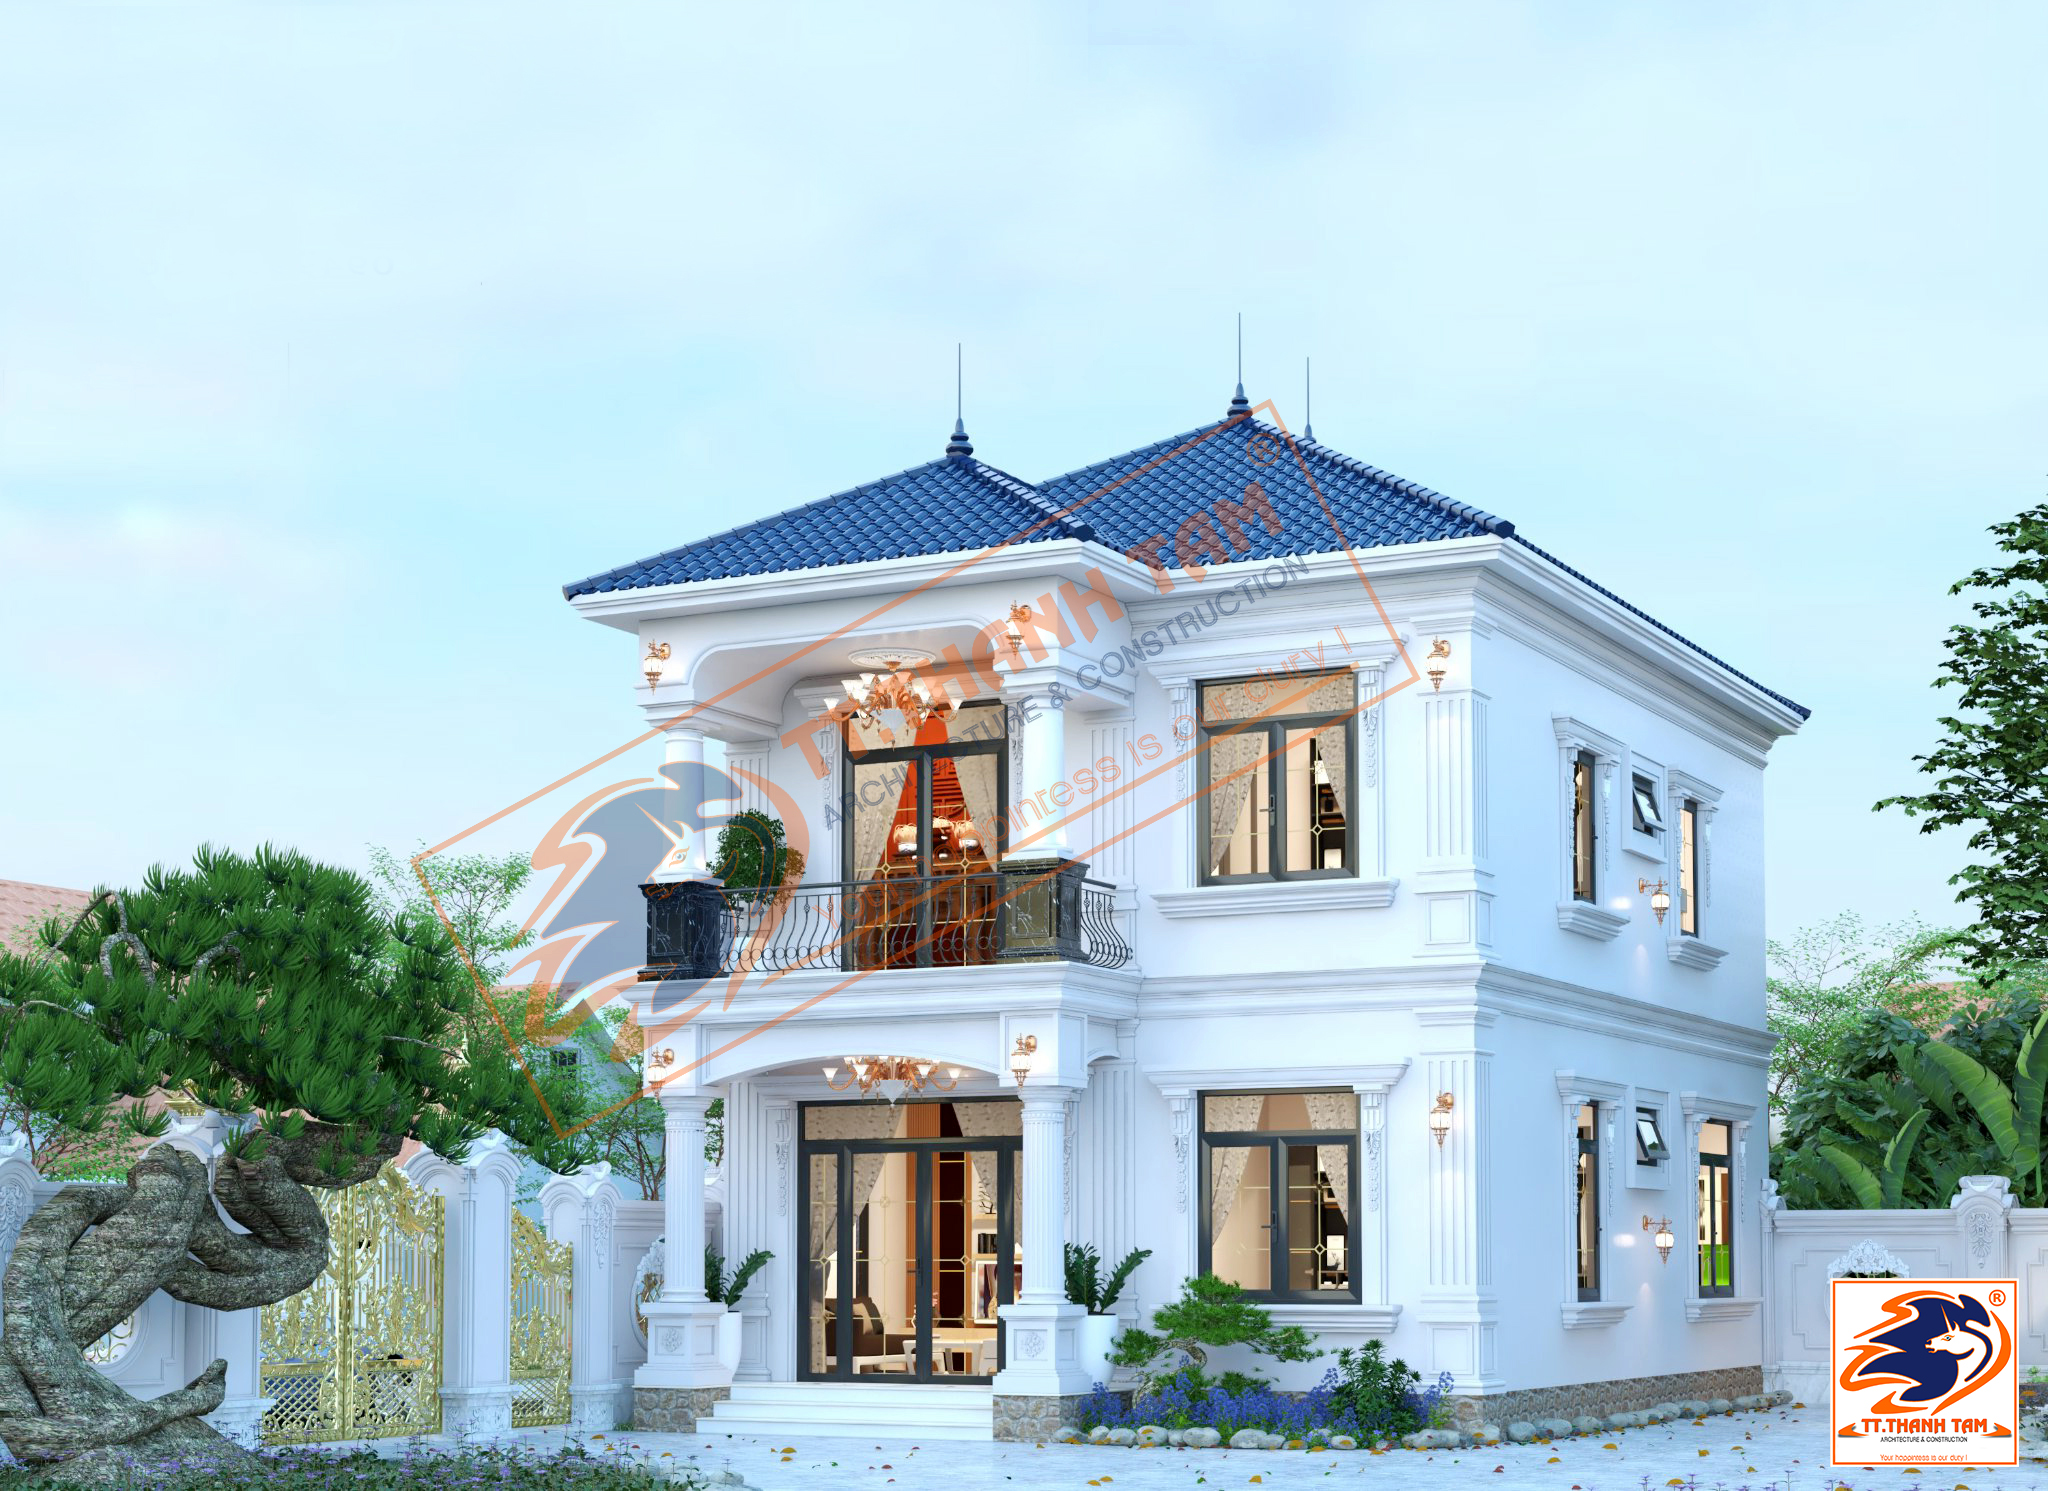 Thiết kế thi công Biệt thự Tân cổ điển 120 m2 Anh Hùng tại Quận 9 - Hồ Chí Minh